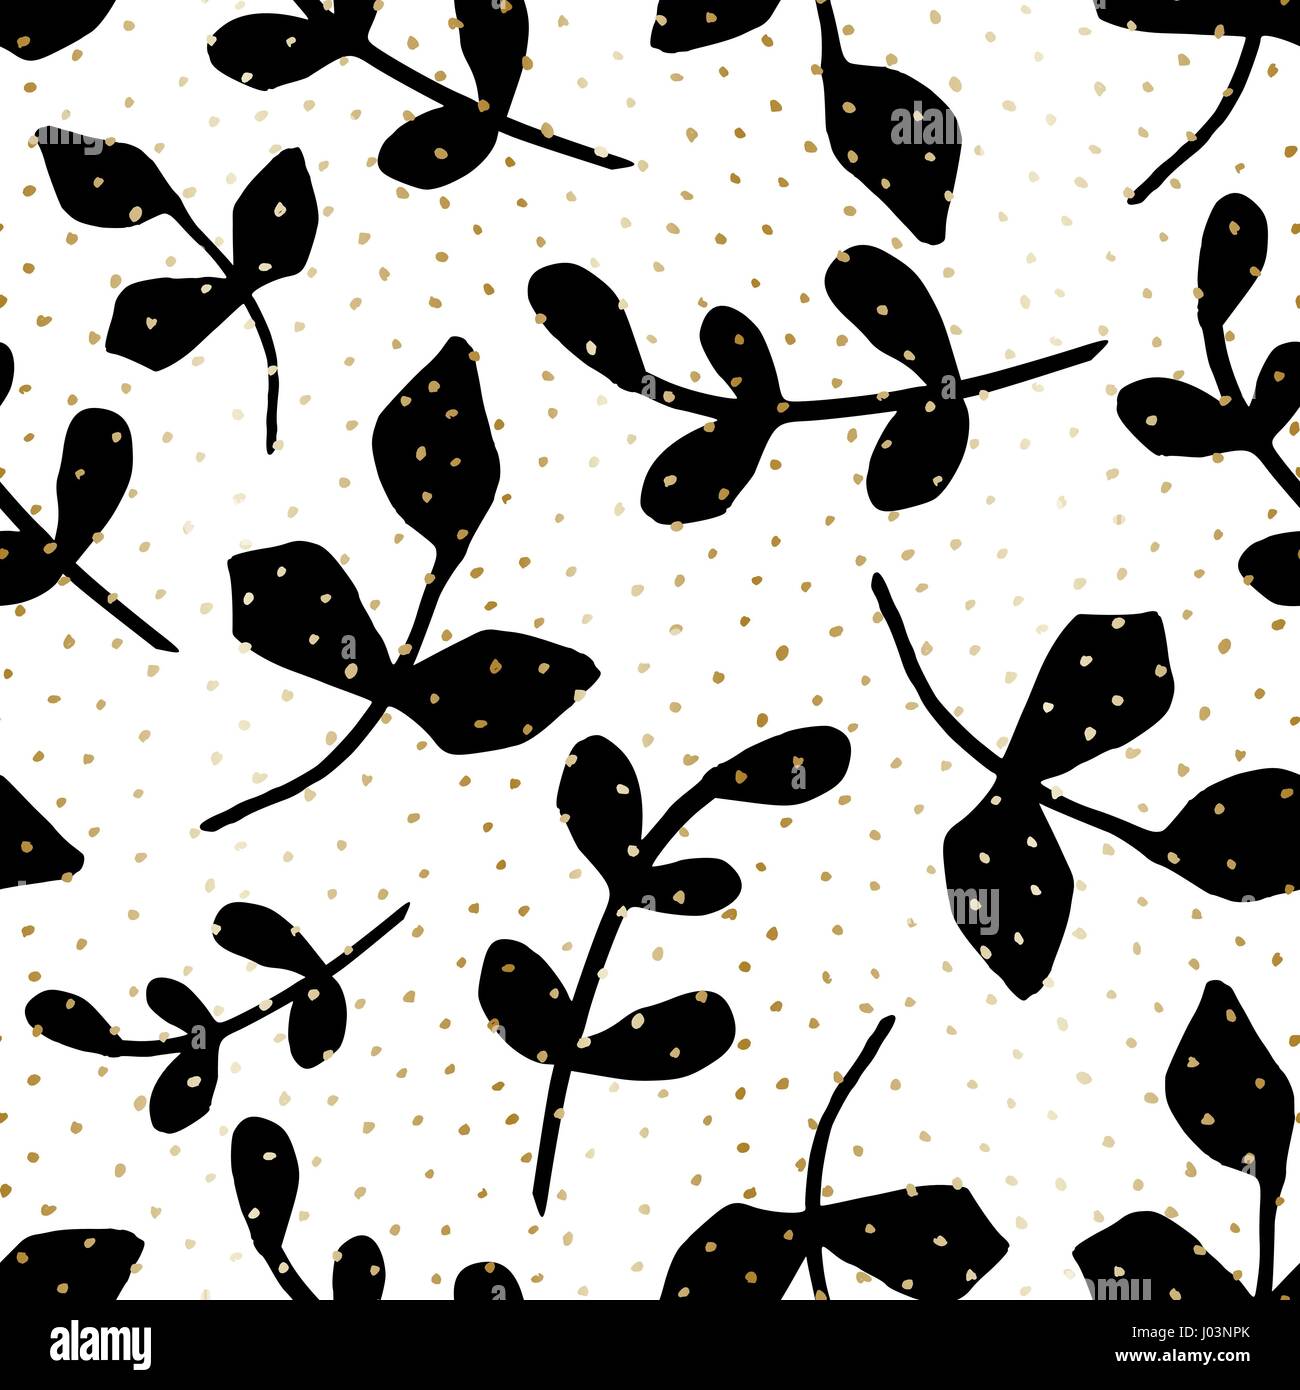 Nahtlose Muster mit schwarzen Ästen und gold Punkte Textur auf weißem Hintergrund. Natur inspiriert Geschenkverpackung, Textil, Tapete, Wand-Kunst-Design. Stock Vektor